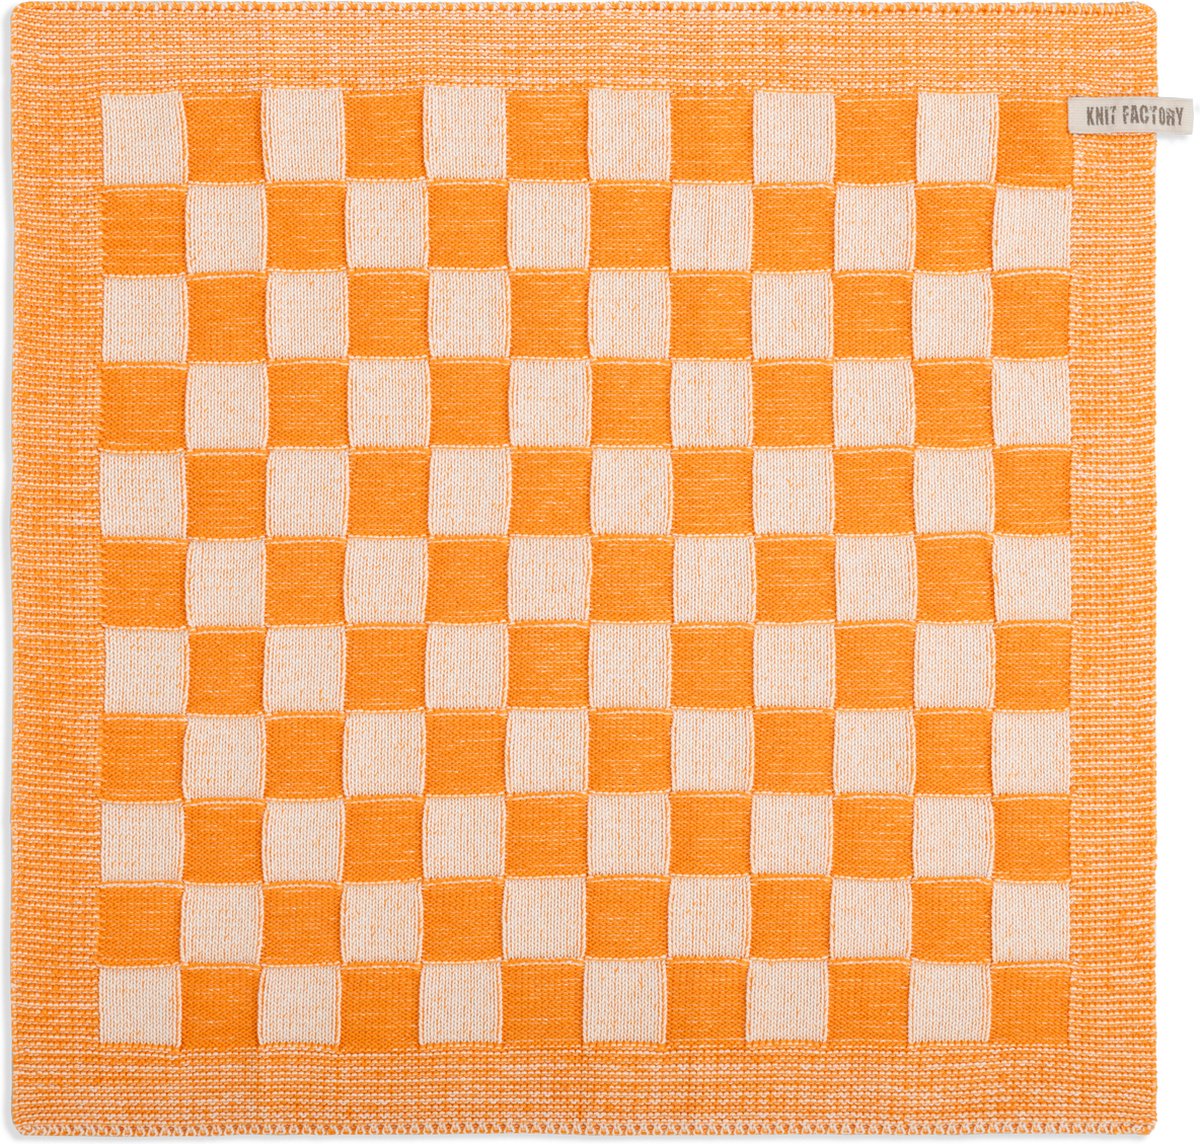 Knit Factory Gebreide Keukendoek - Keukenhanddoek Block - Geblokt motief - Handdoek - Vaatdoek - Keuken doek - Ecru/Orange - Traditionele look - 50x50 cm